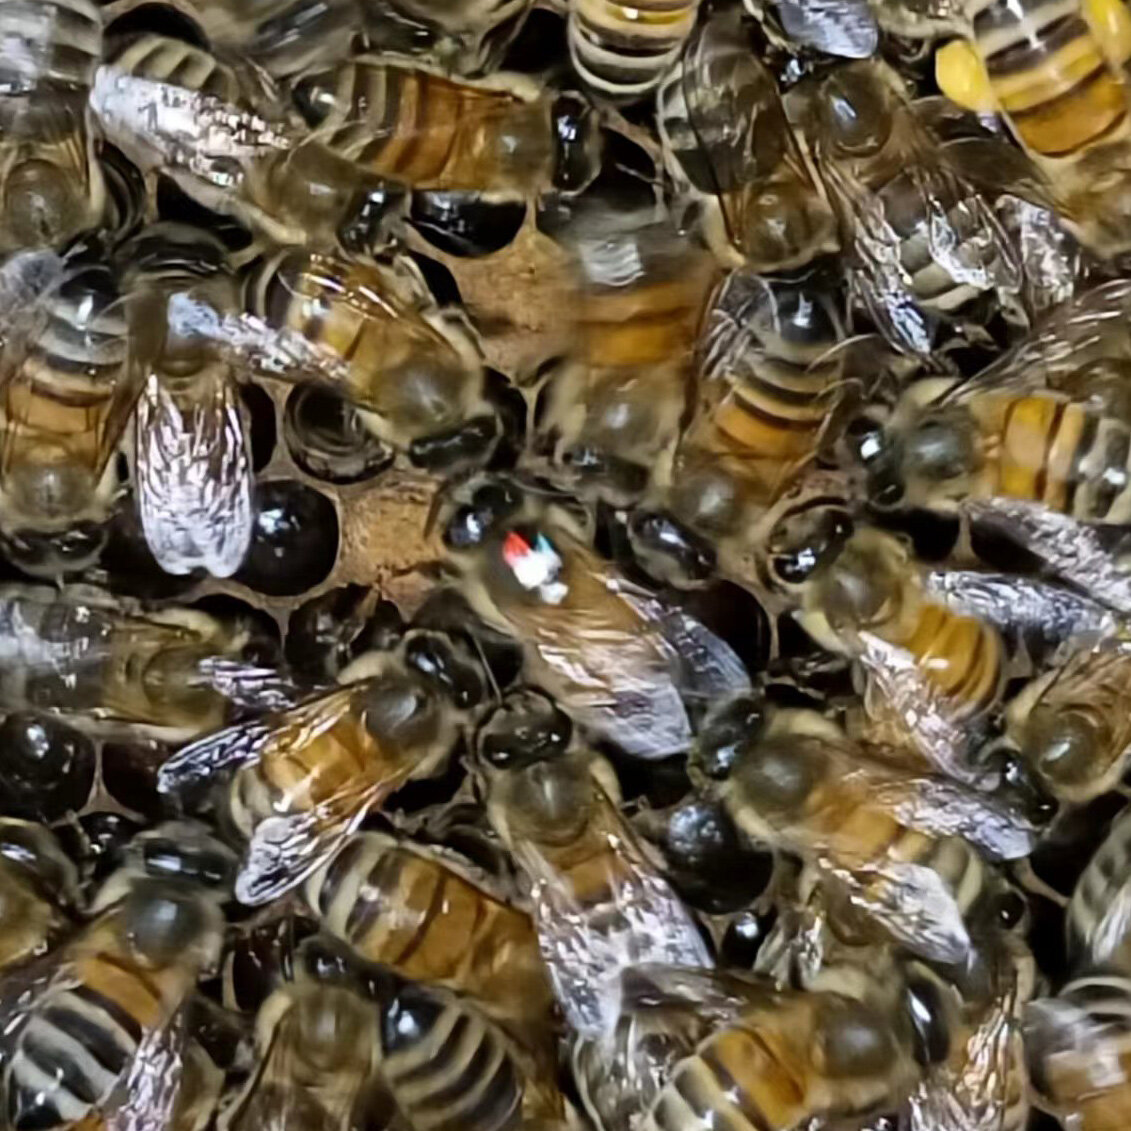 在蜜蜂的“摇摆舞”中发现了复杂的社交行为